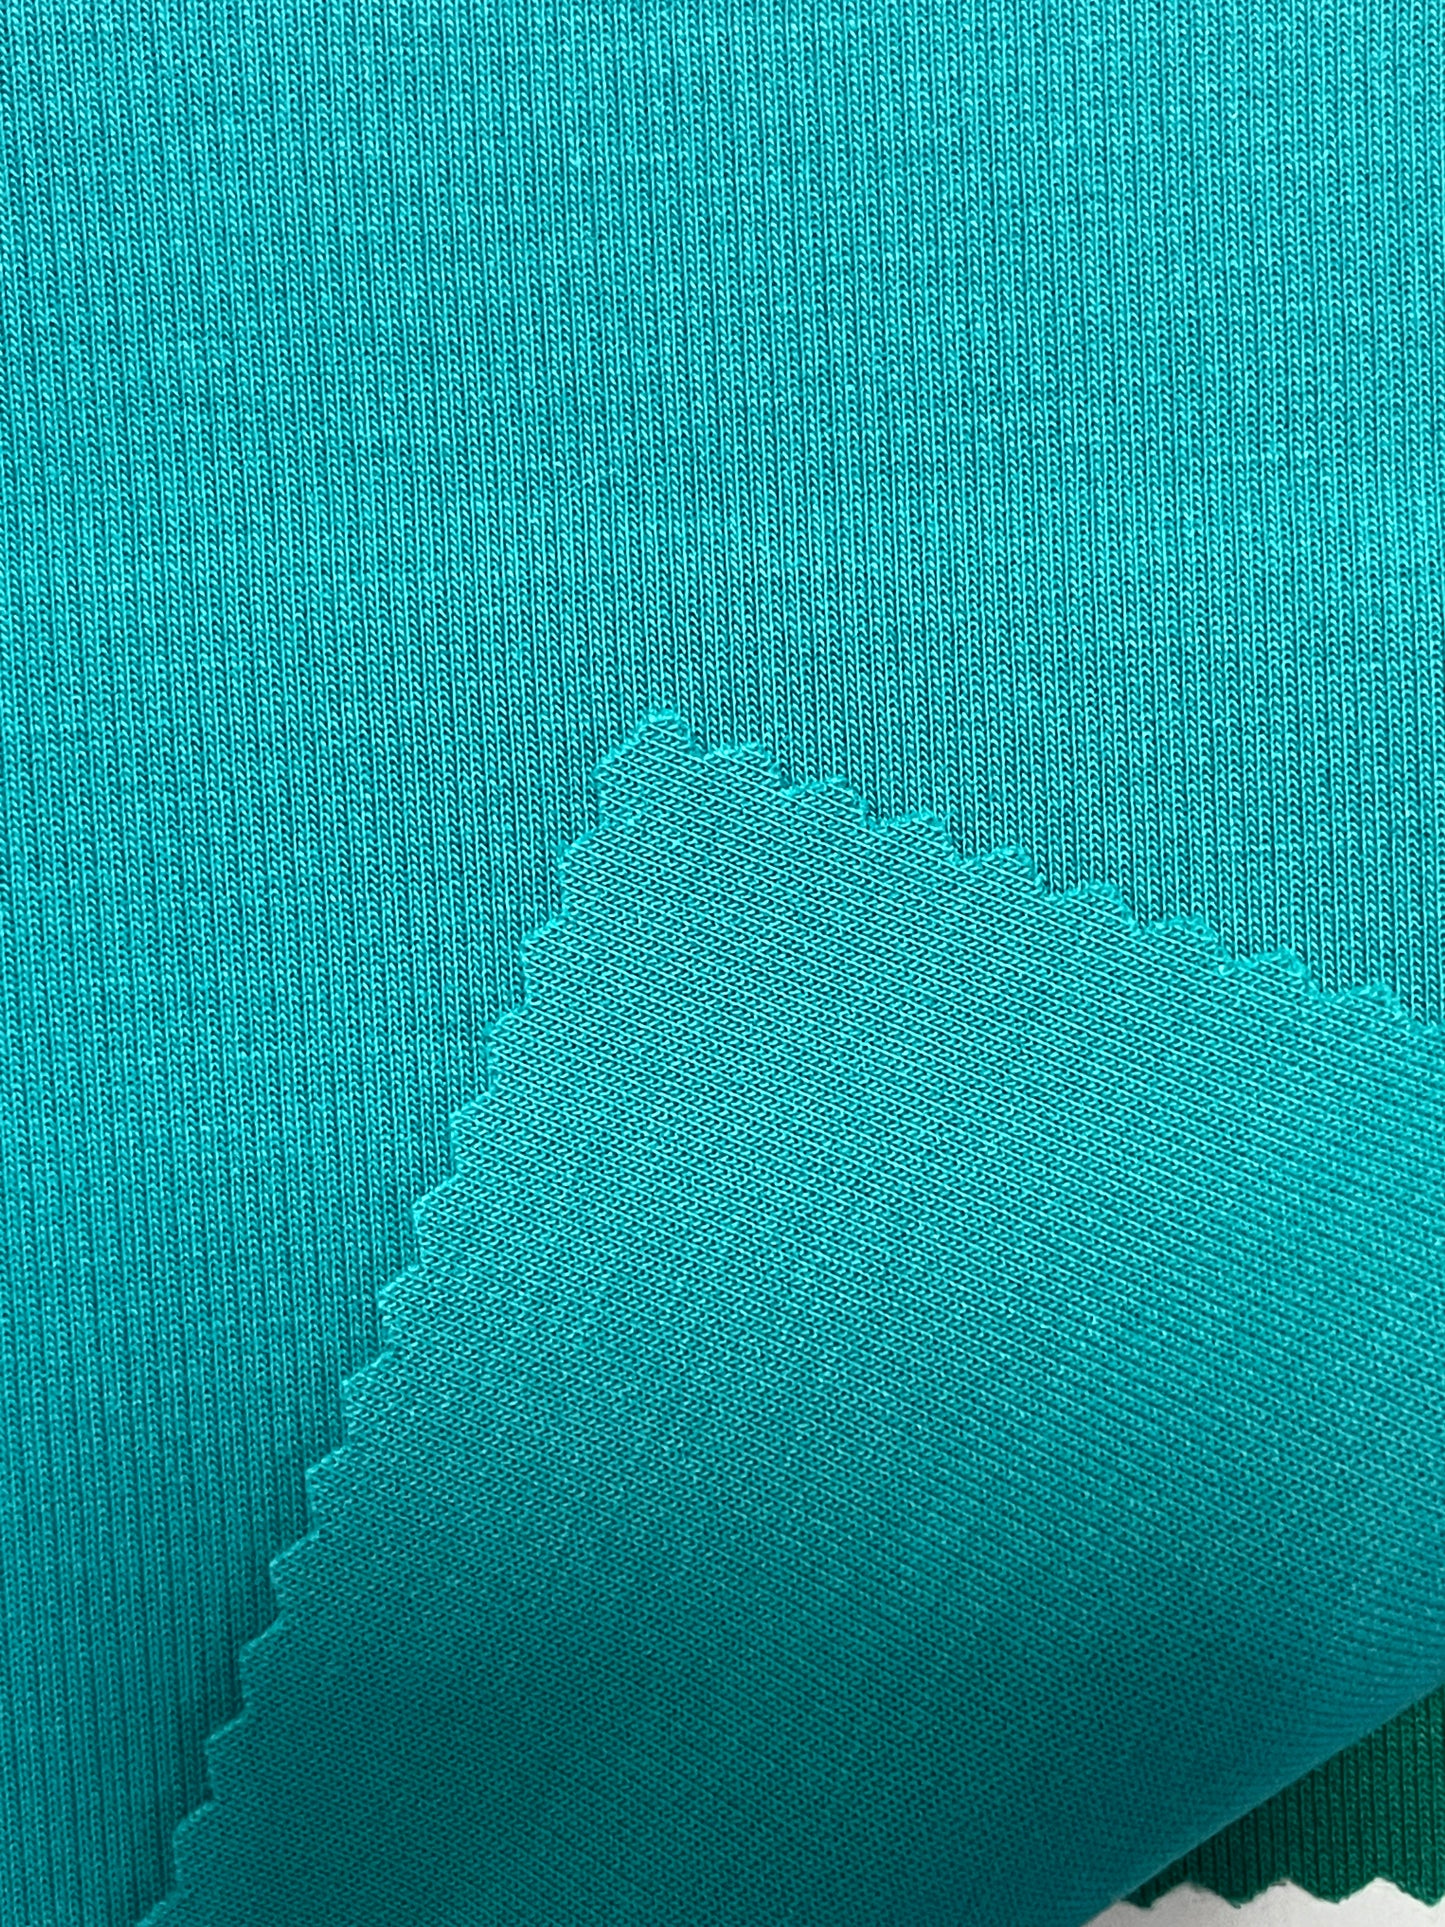 Double-Sided Knit Fabric - Natasha Fabric